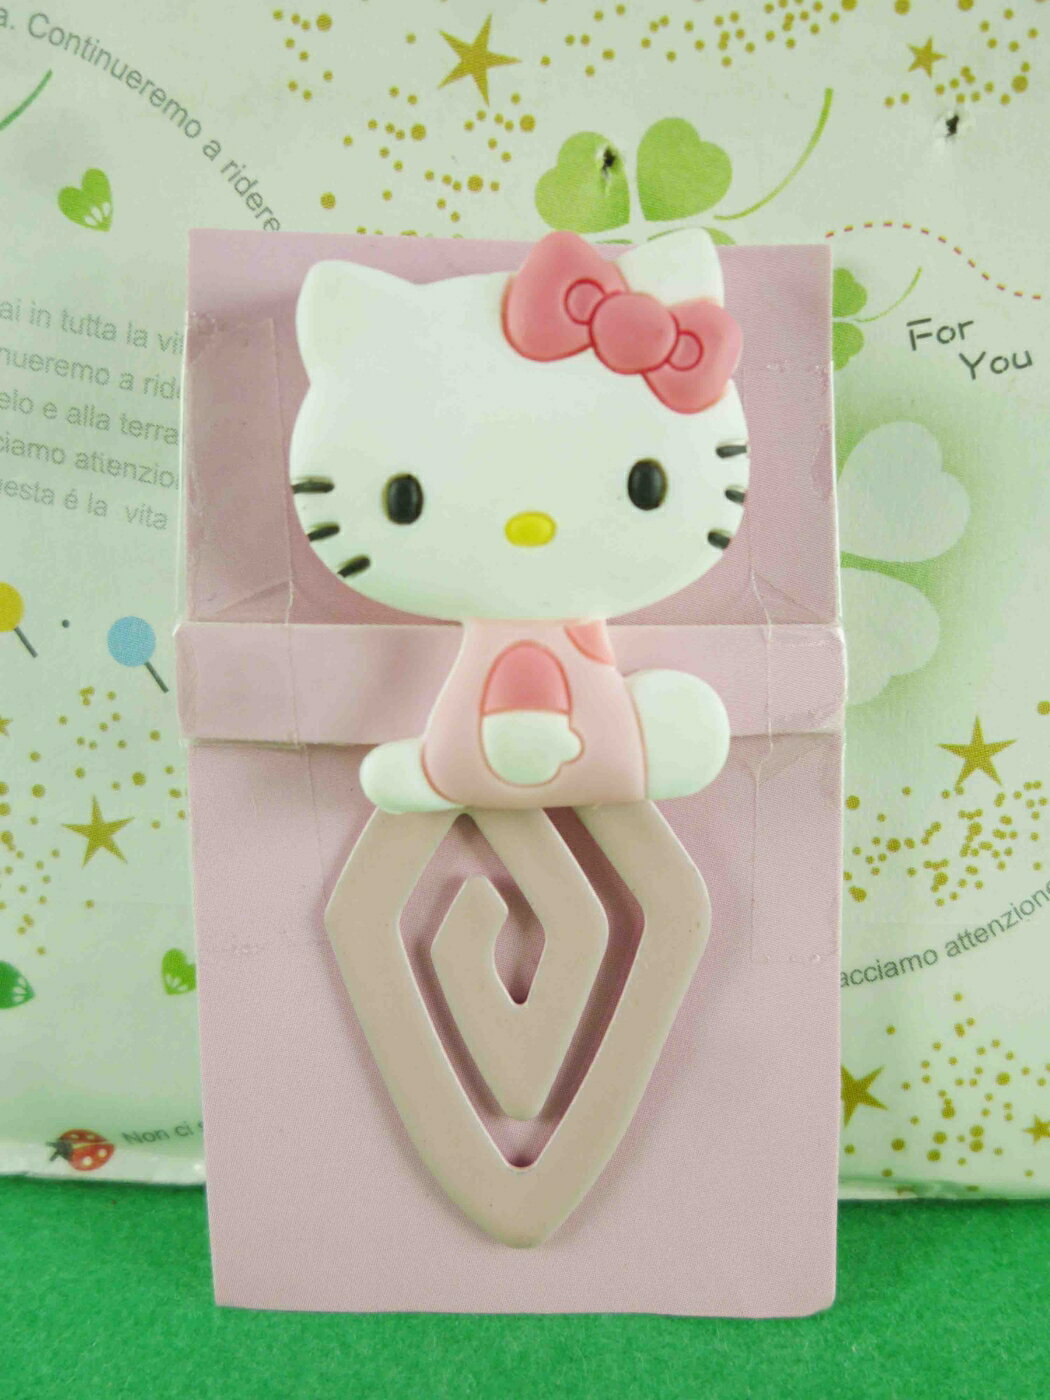 【震撼精品百貨】Hello Kitty 凱蒂貓 造型夾-菱形書夾-粉色(小) 震撼日式精品百貨